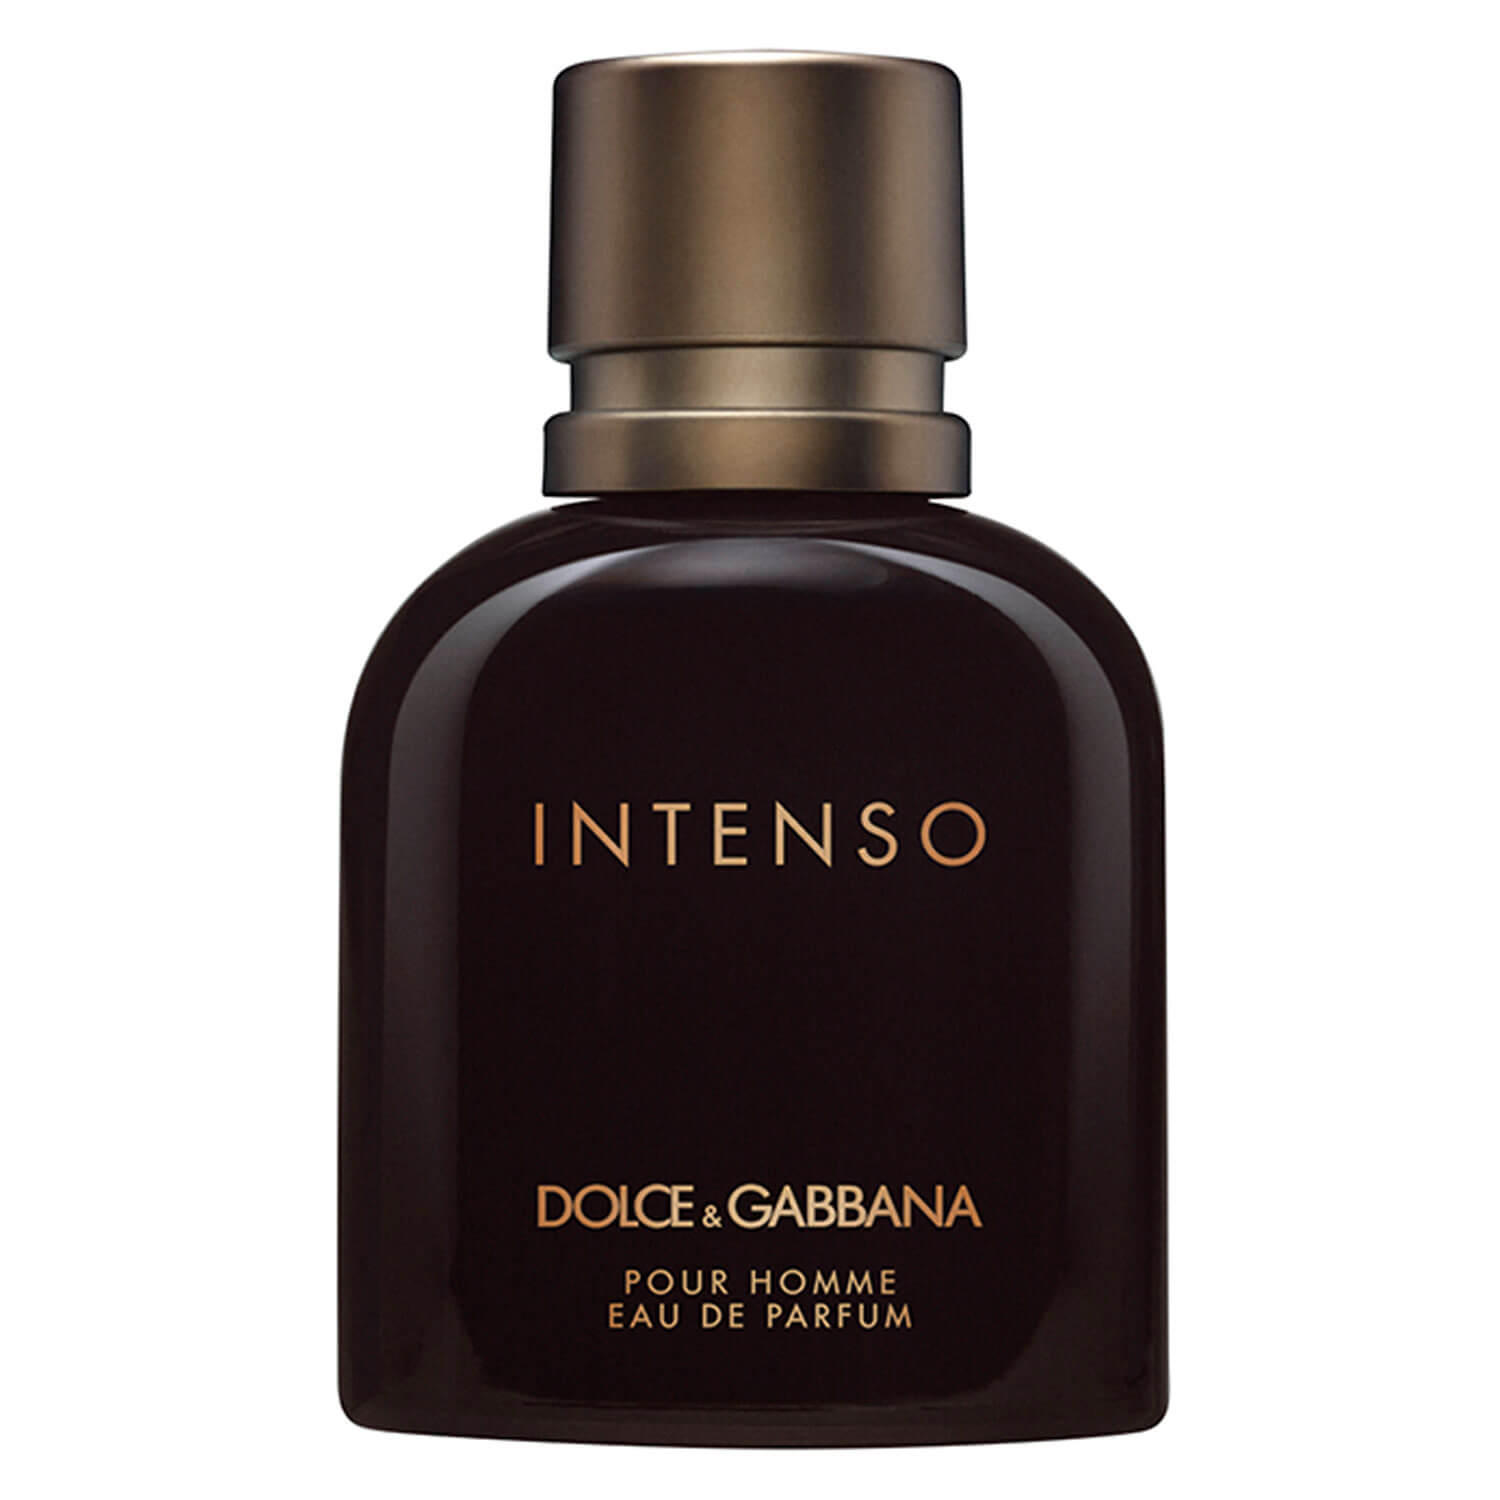 D&G - Intenso Pour Homme Eau de Parfum | Dolce & Gabbana ...